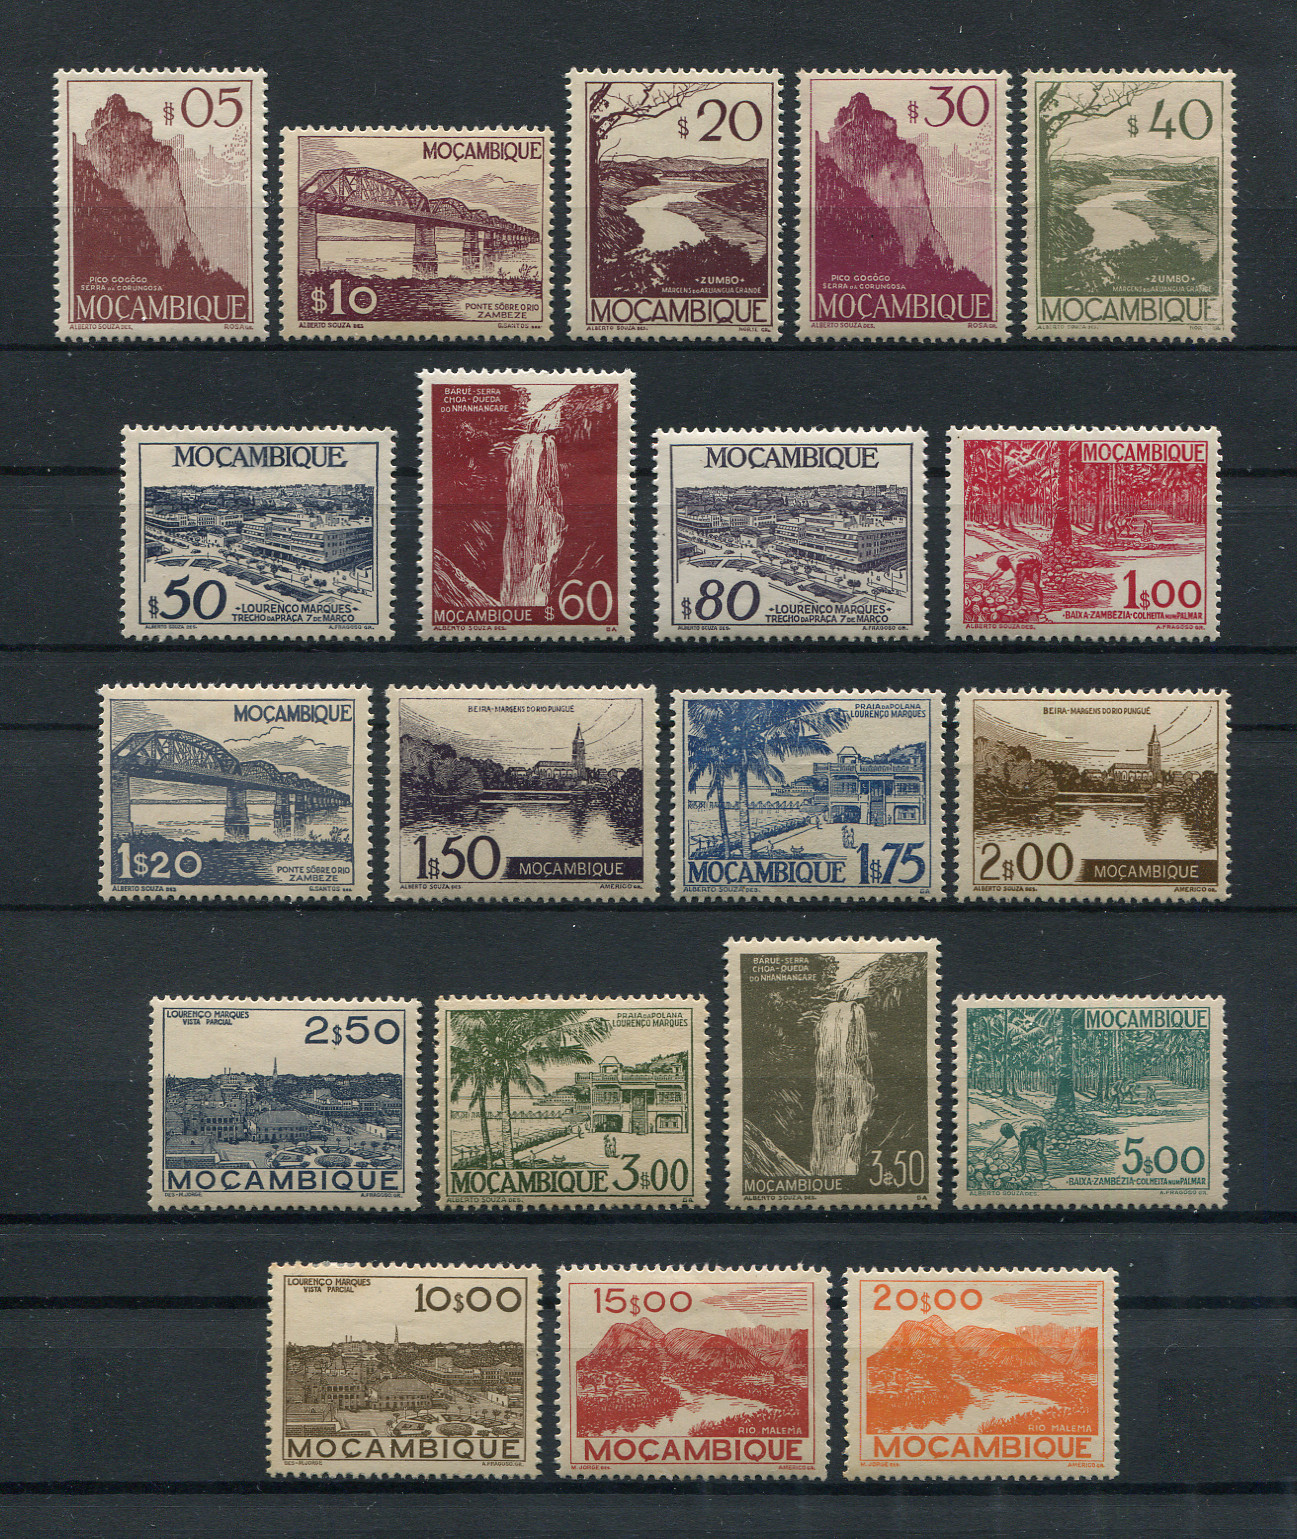 1948 - Afinsa nº 324/343. Vistas de Moçambique. Série completa nova, COM CHARNEIRA (*) e goma original. Em boas condições.